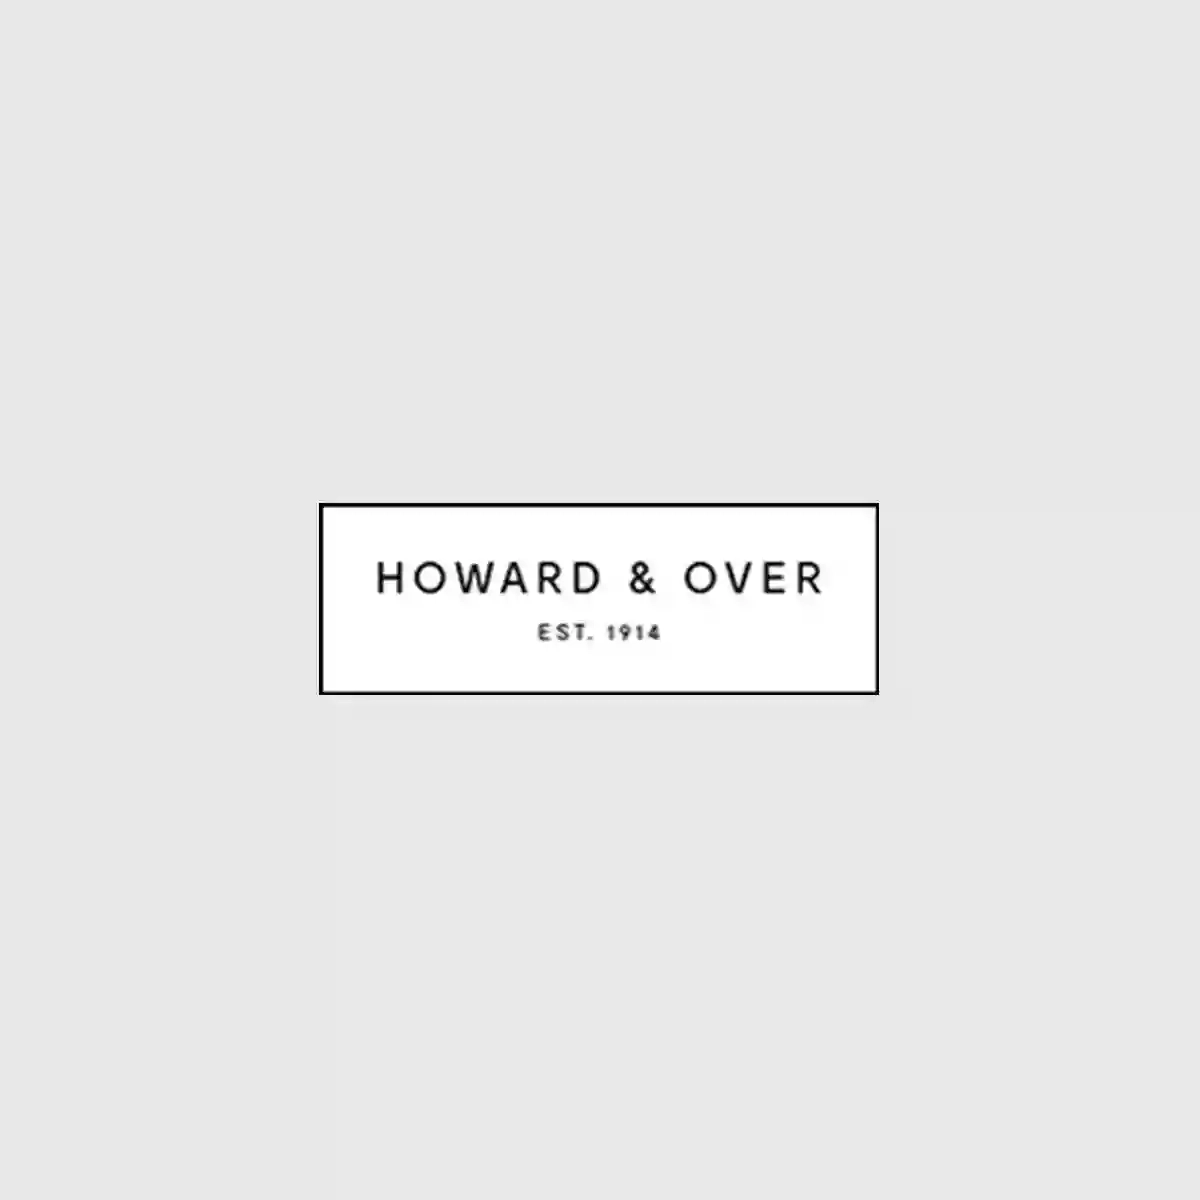 Howard & Over